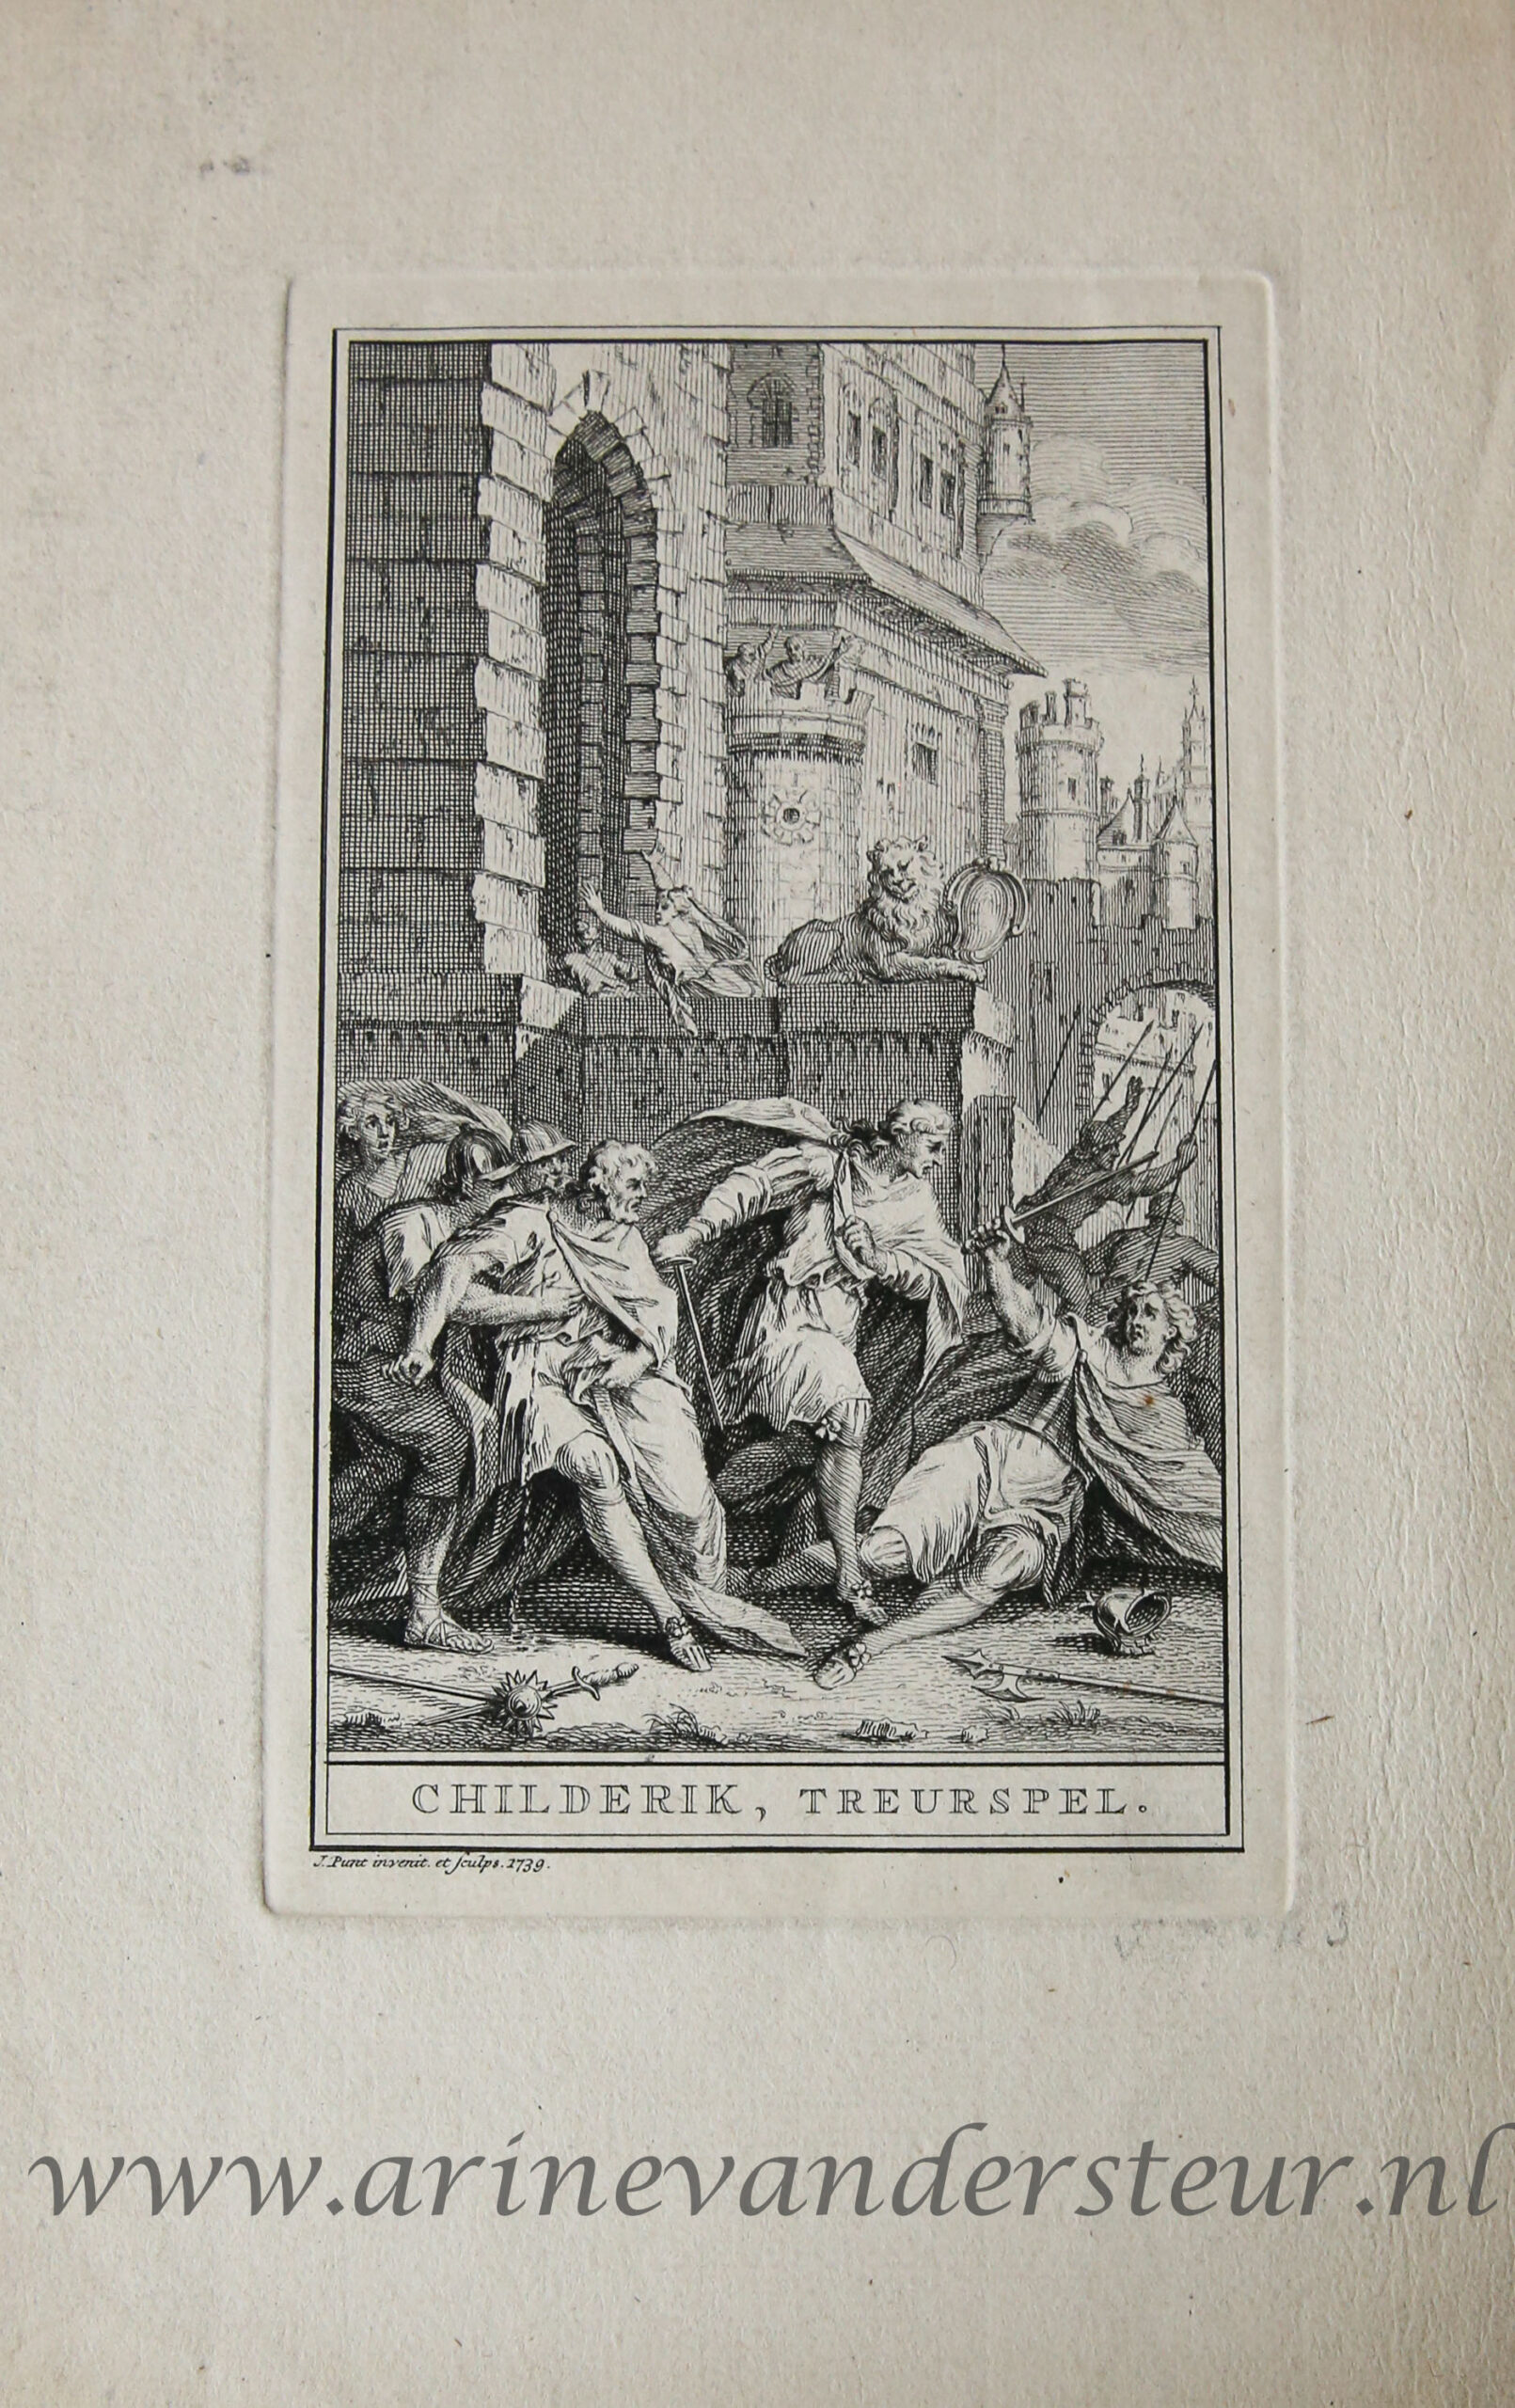 [Antique title page, 1739] Gevecht voor een kasteel [Childerik, treurspel], published 1739, 1 p.